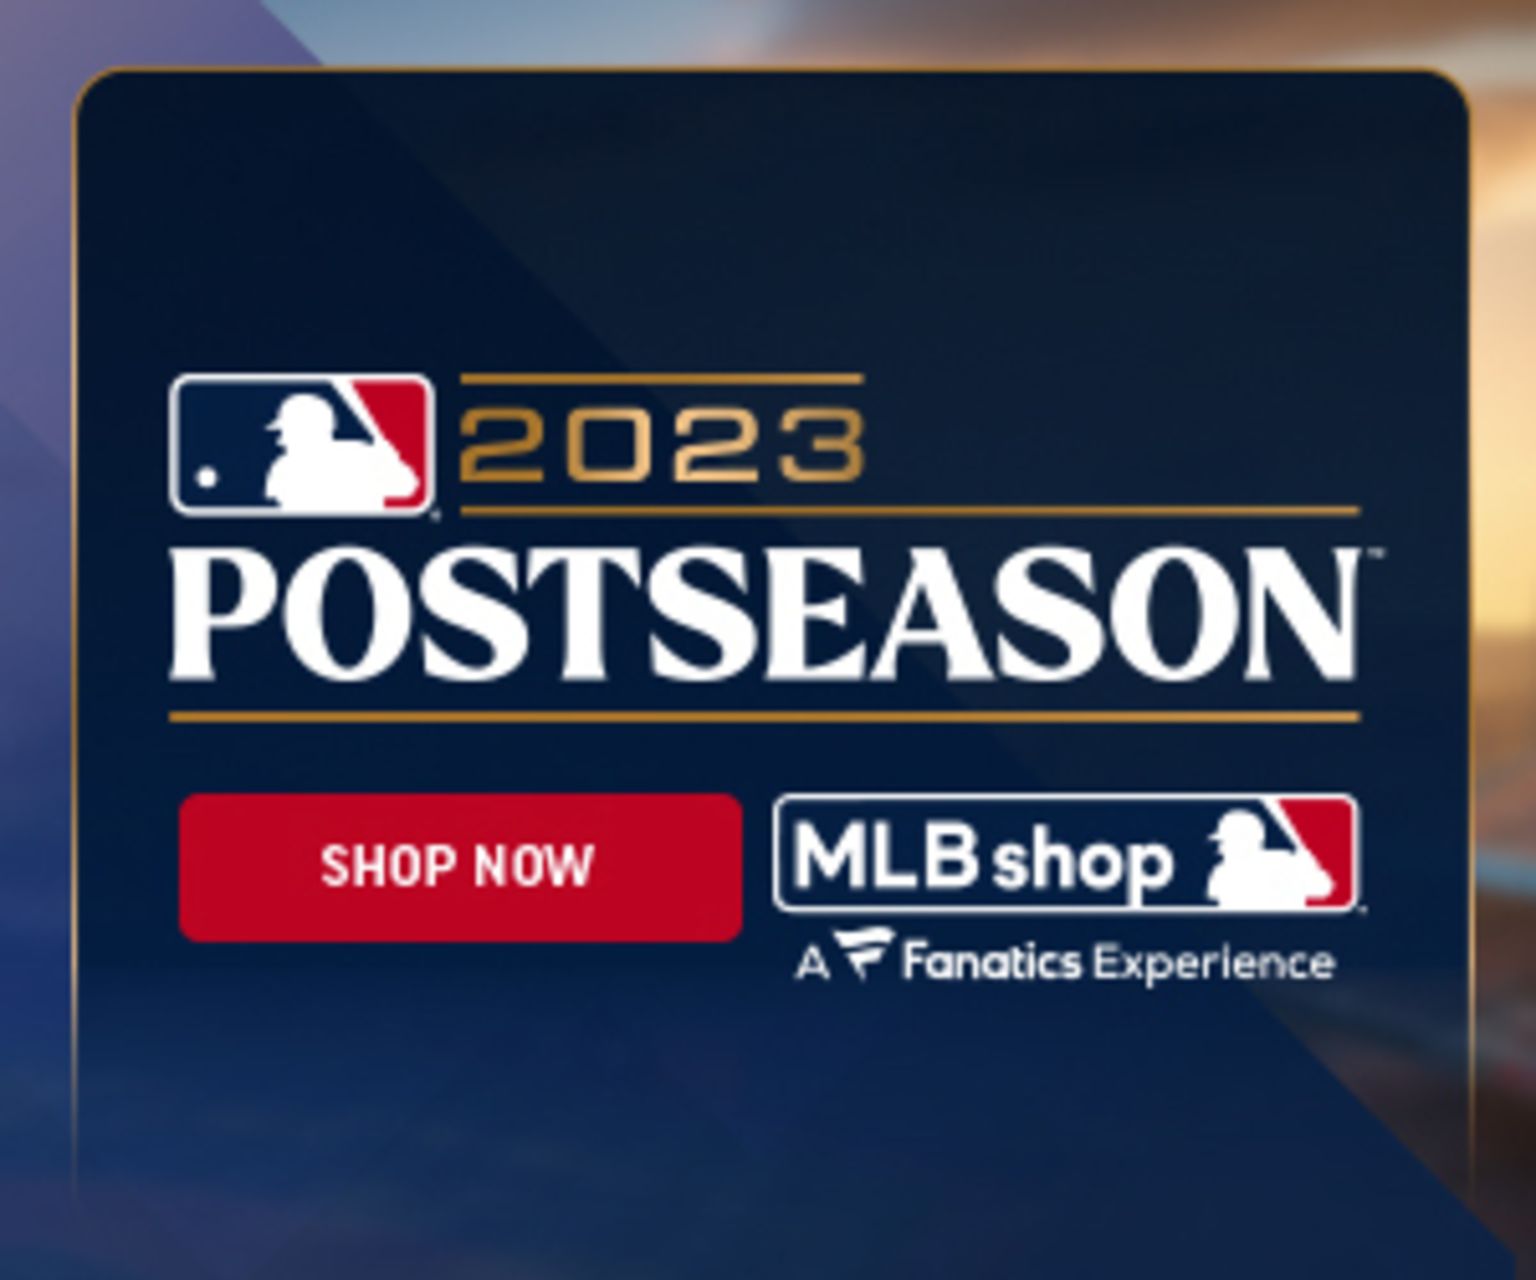 2014 Major League Baseball Postseason Brackets